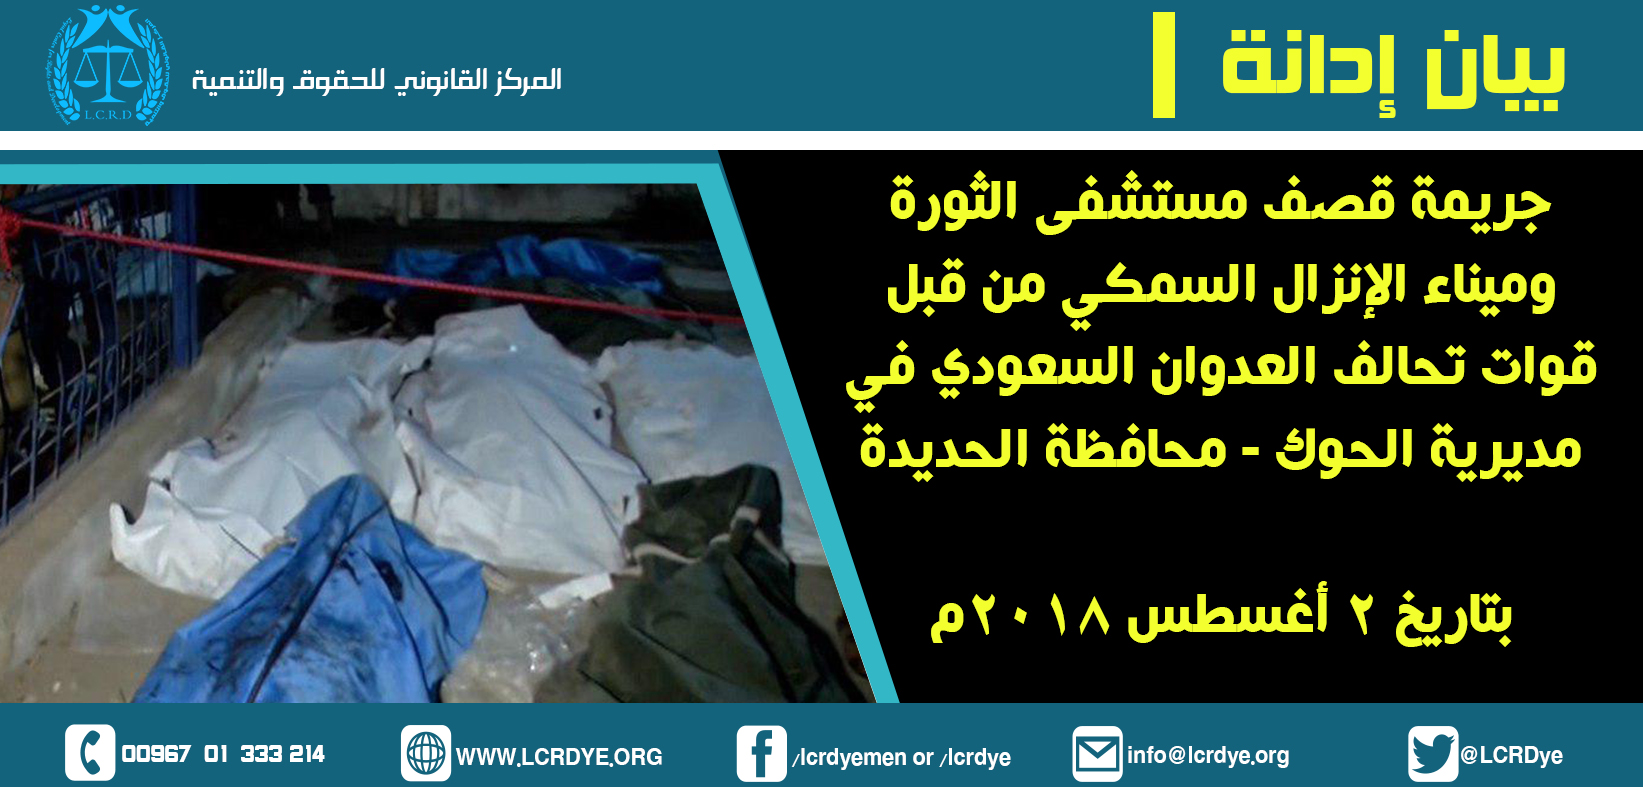 بيان إدانة استهداف مستشفى الثورة بالحديدة 2-8